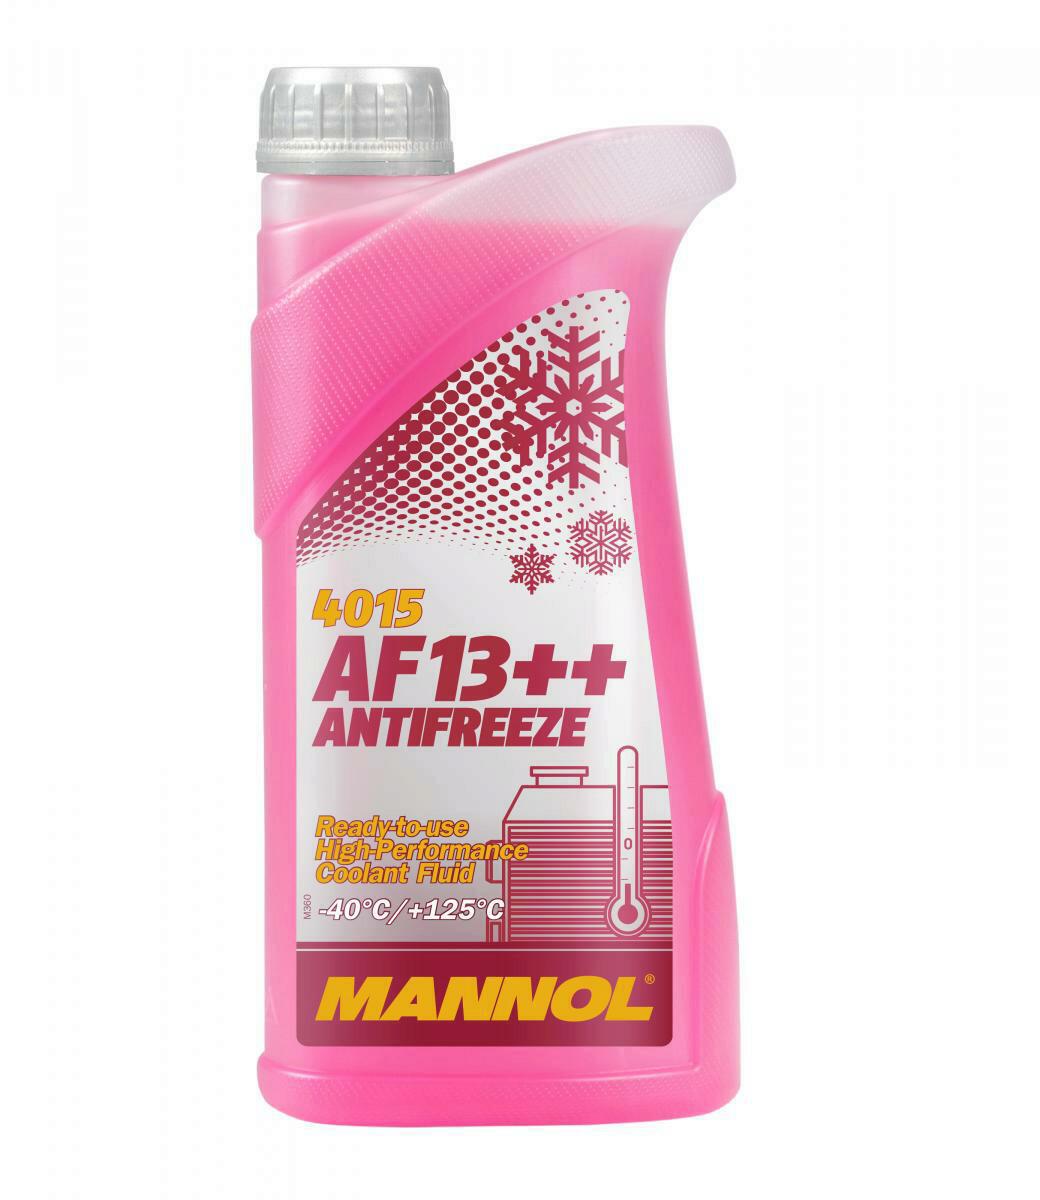 Mannol Kühlerfrostschutz AF13++ Rot High Perfomance Antifreeze